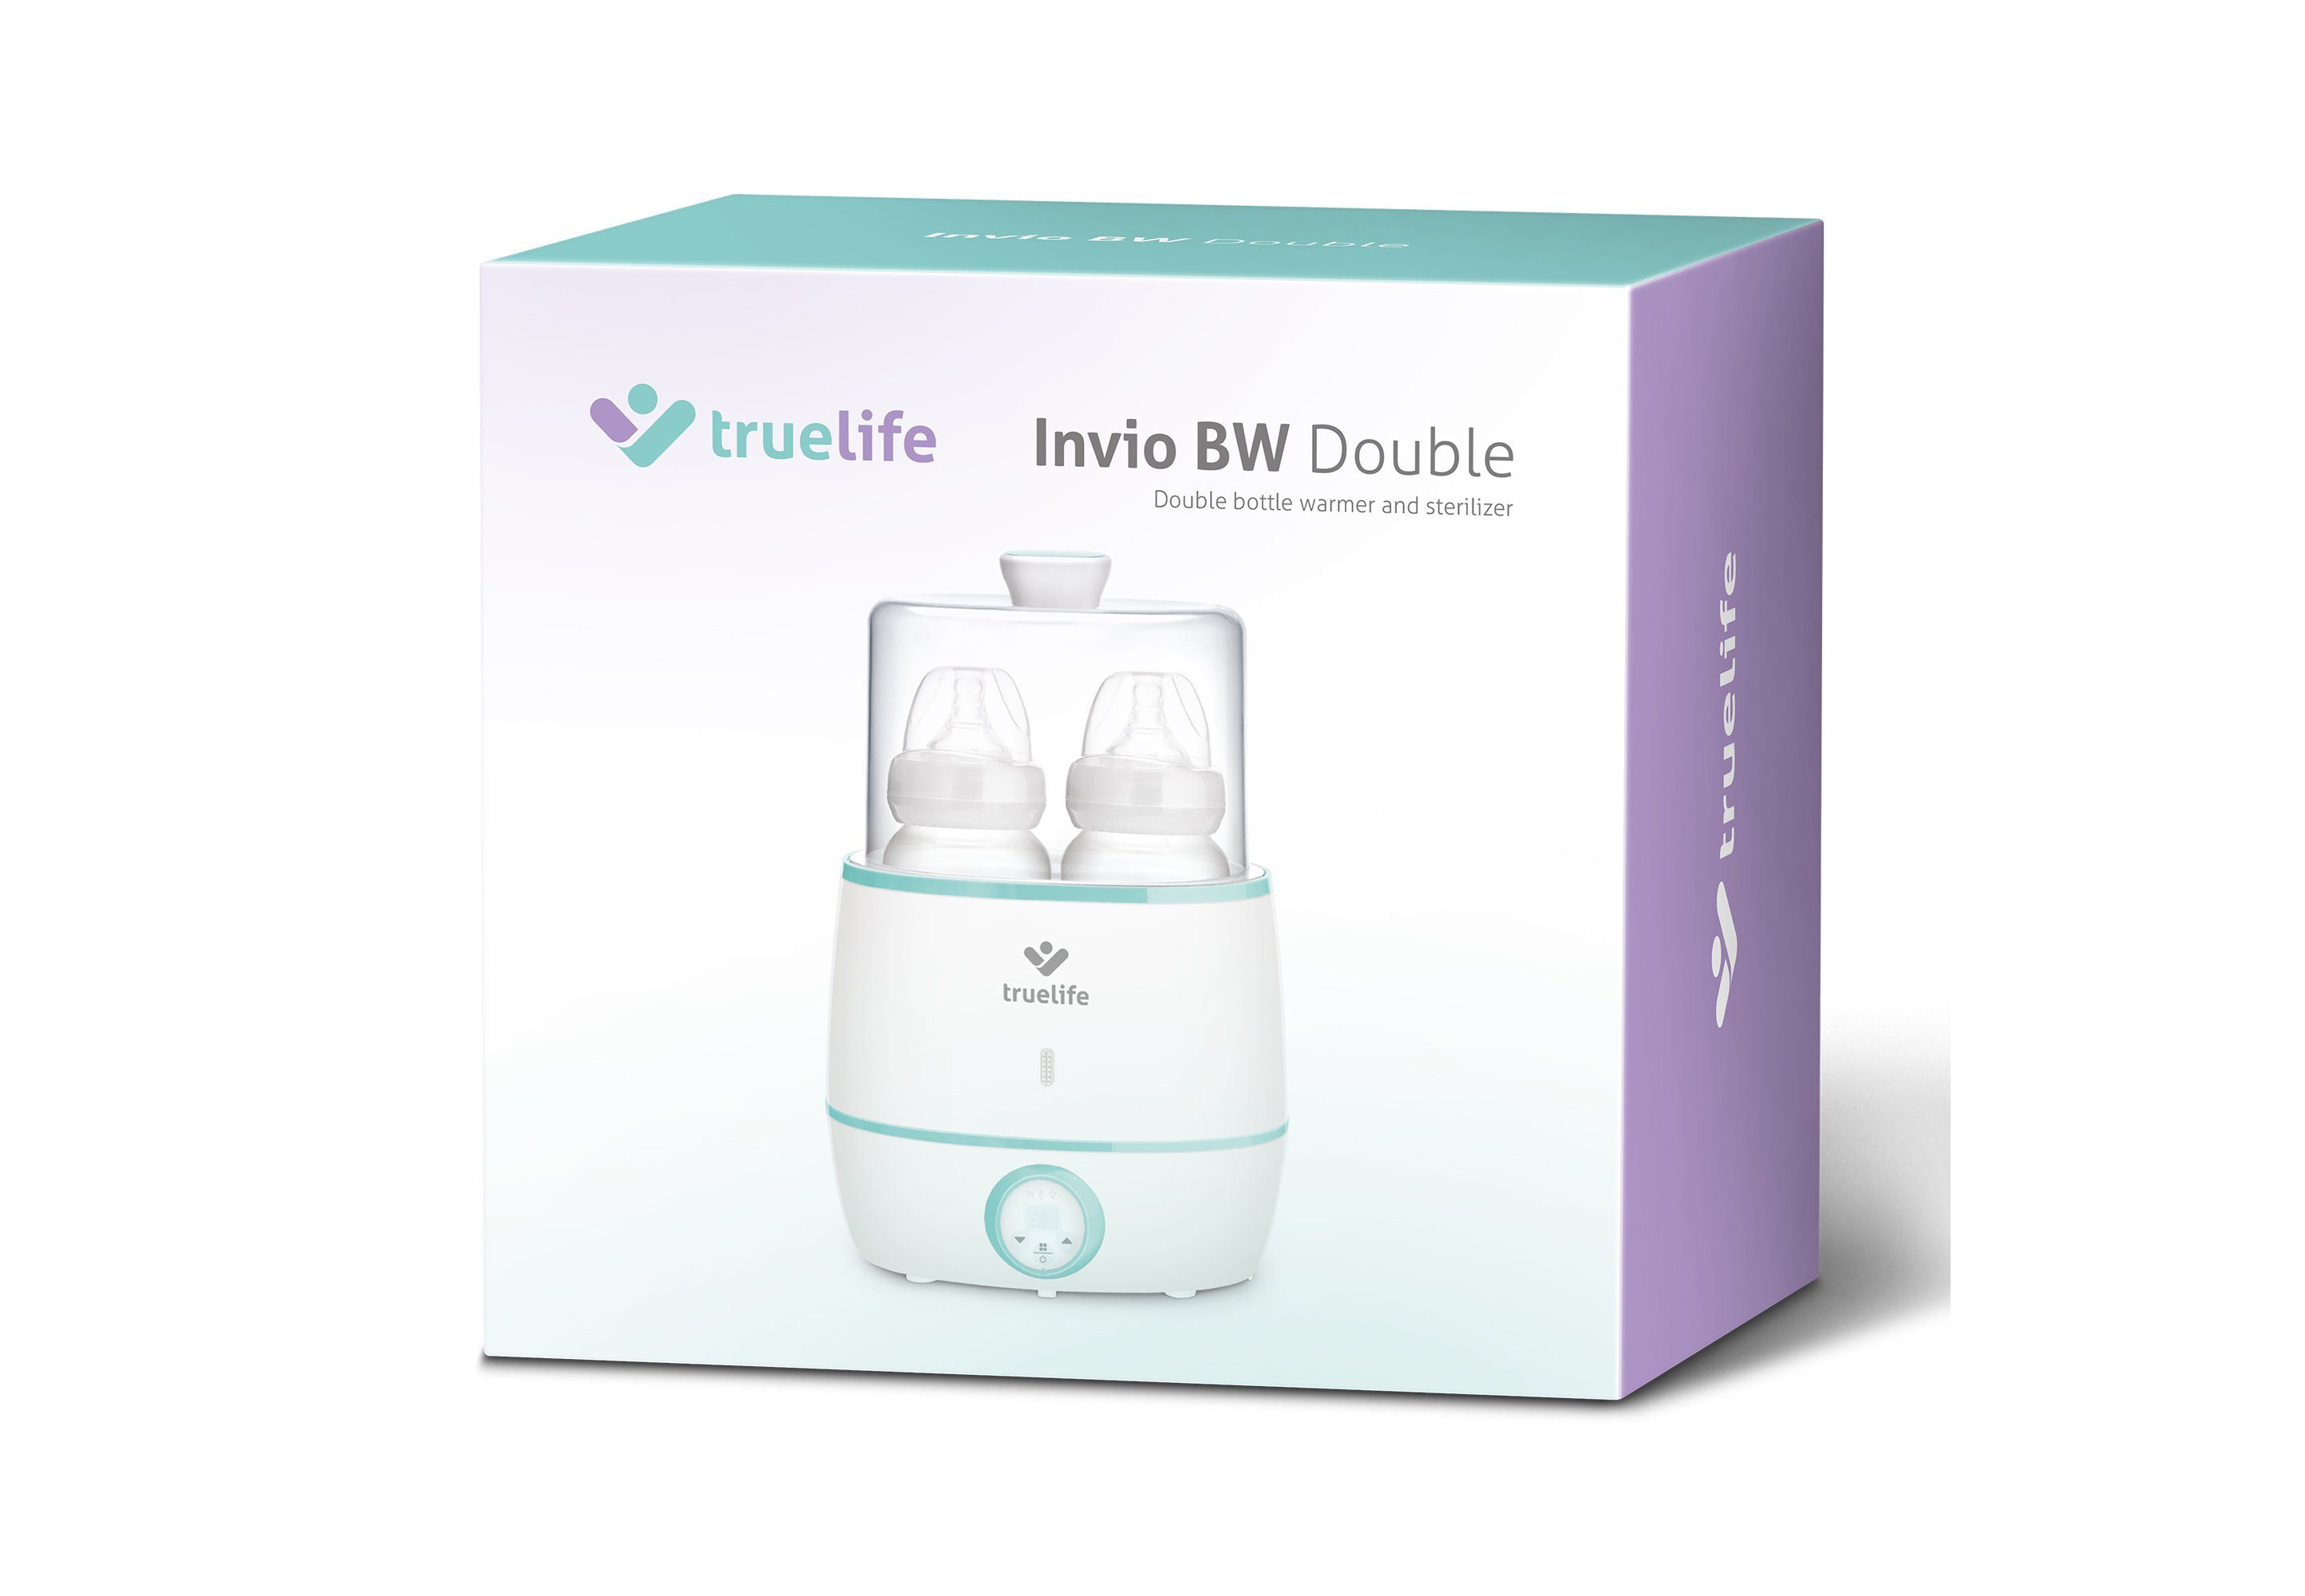 Double, praktischem BW TrueLife Babyflaschenwärmer Sterilisator mit Invio